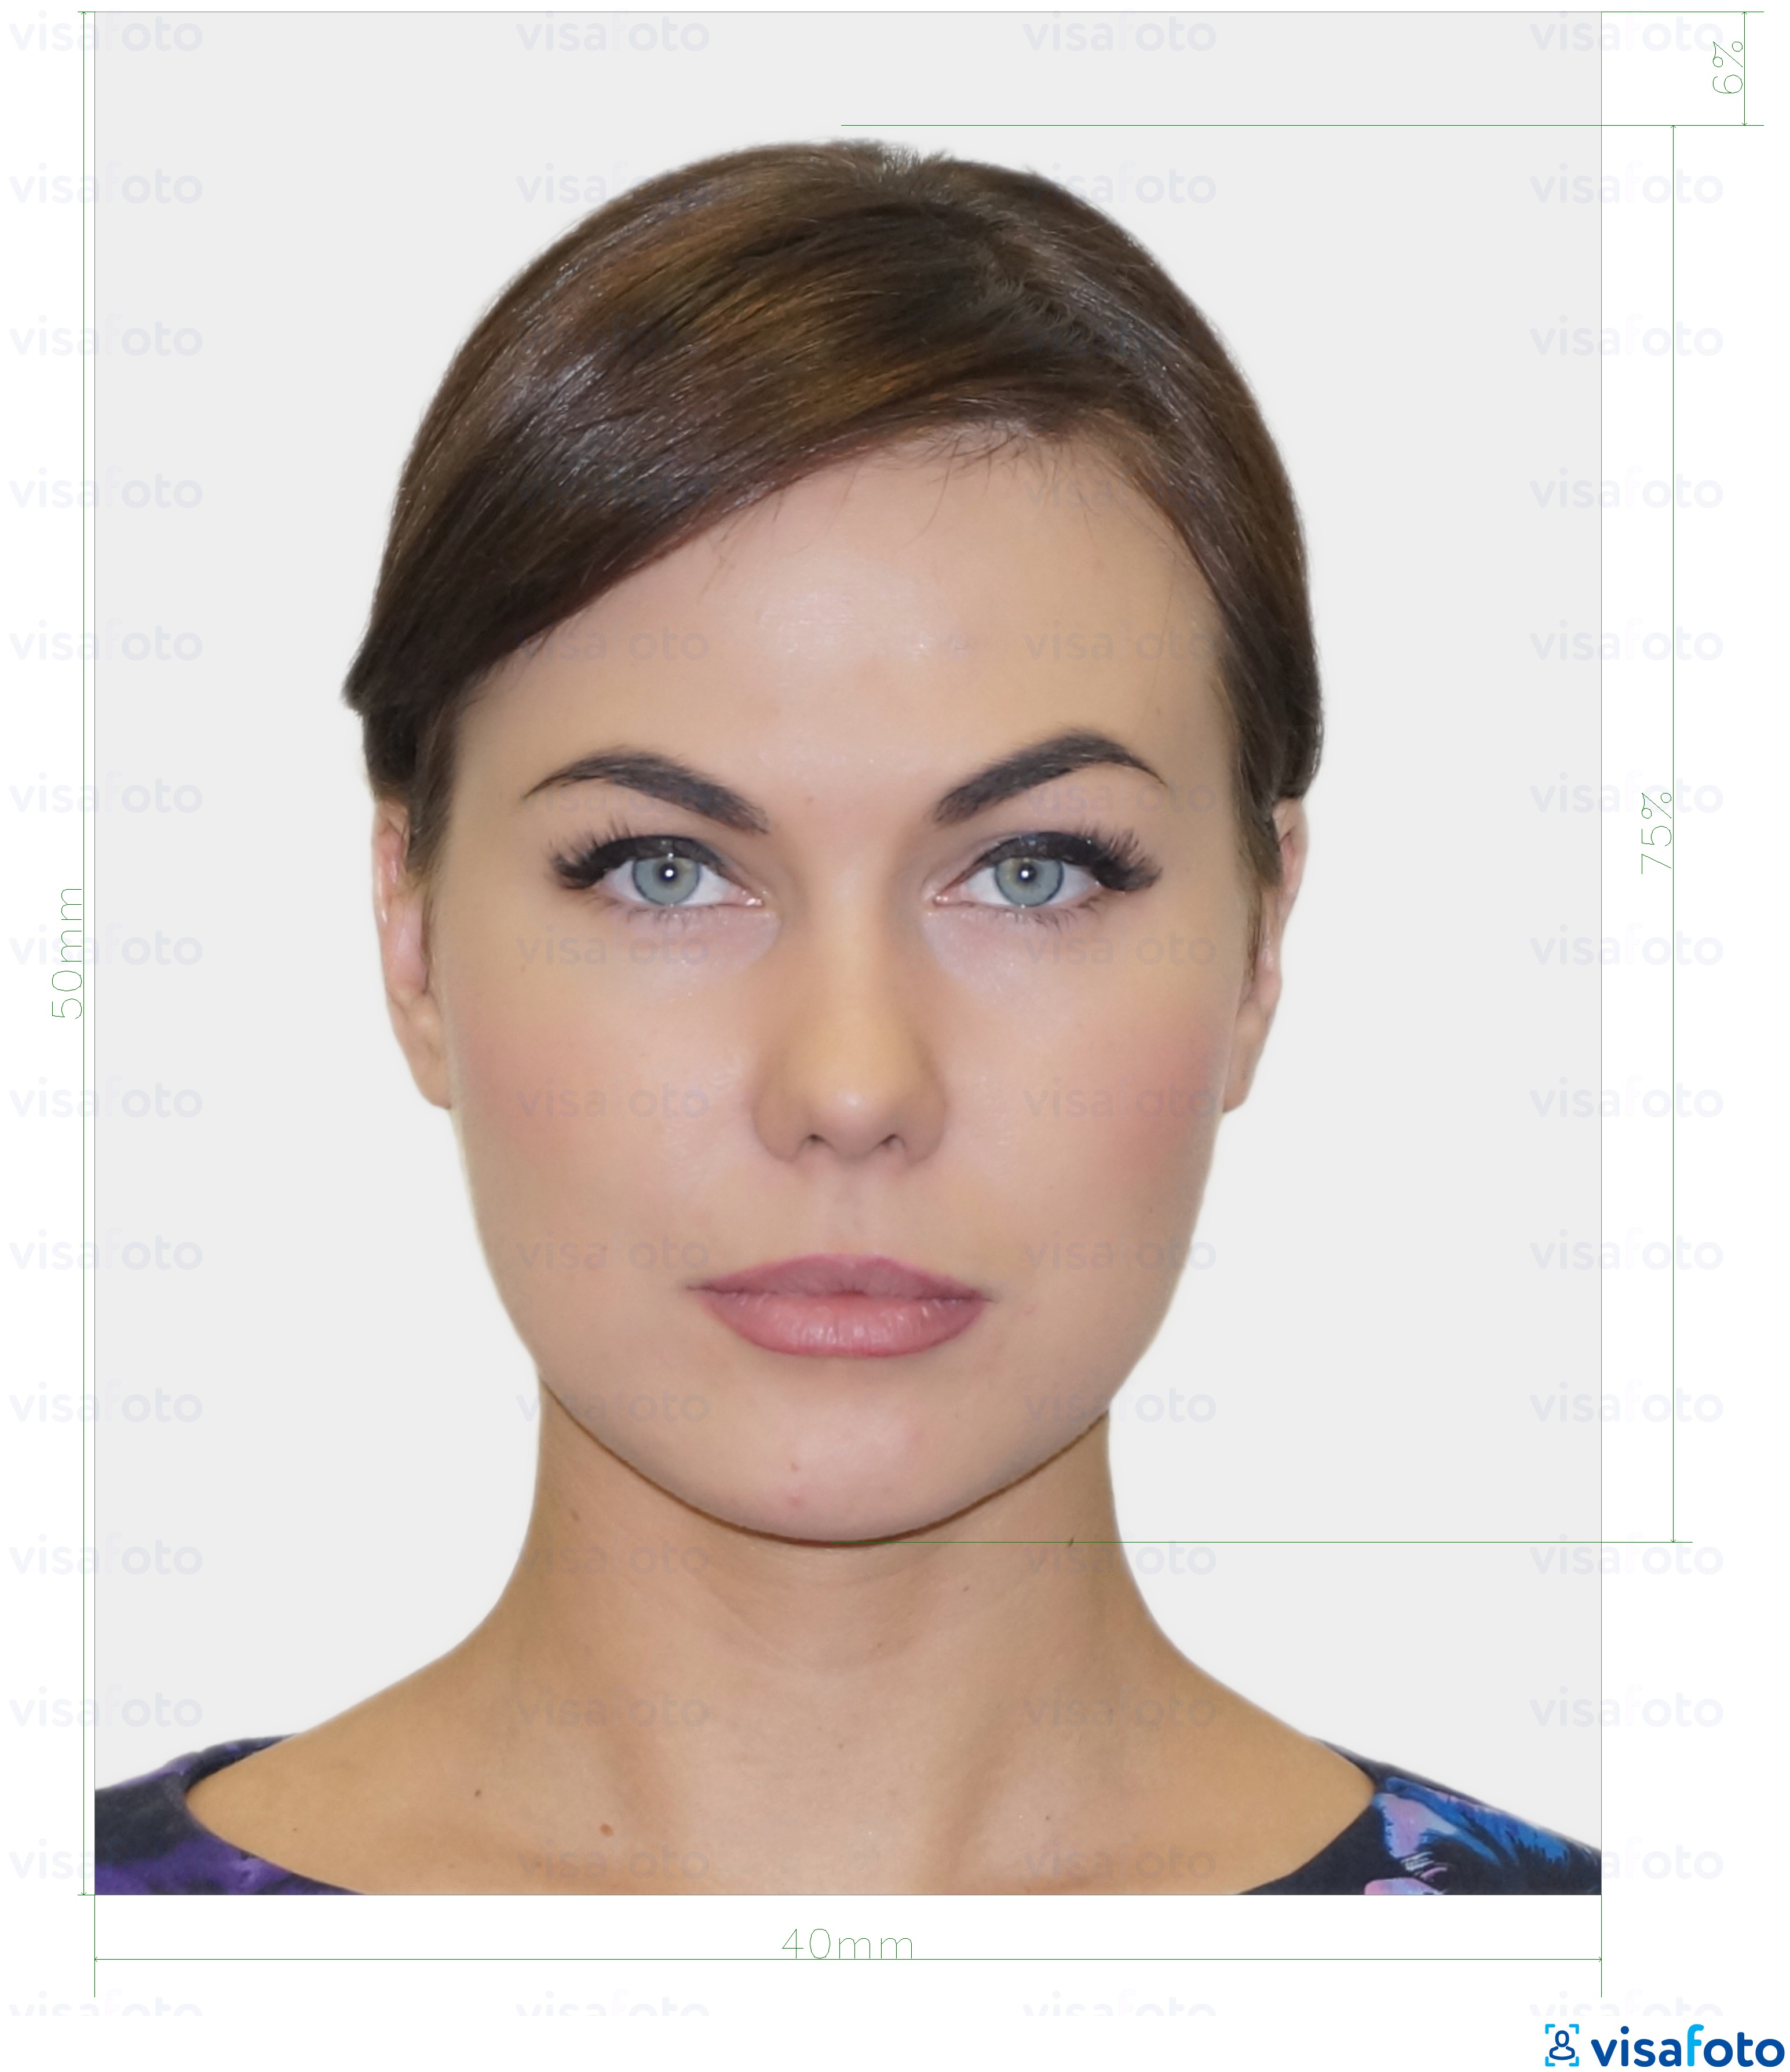 Exemples sur des photos pour Estonie Carte d'identité (ID-kaart) 40x50 mm (4x5 cm) avec les spécifications de taille exactes